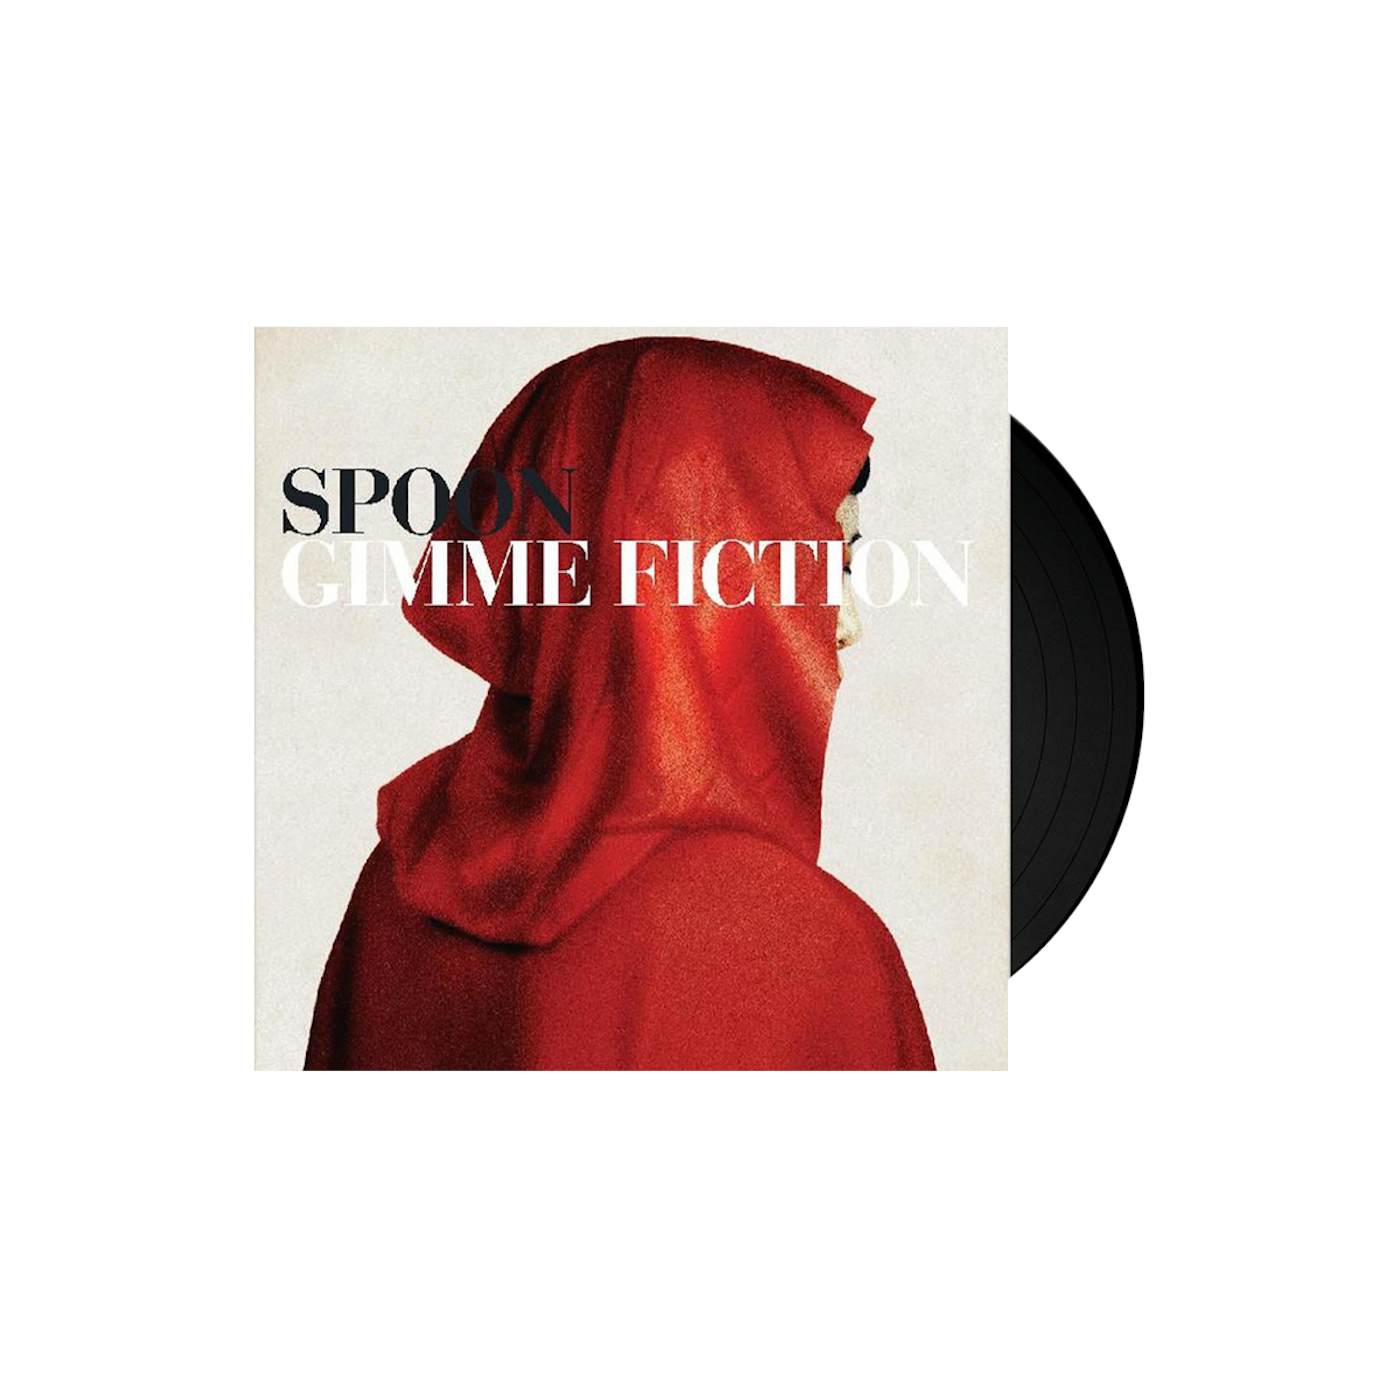 Spoon Gimme Fiction Reissue LP (Vinyl)